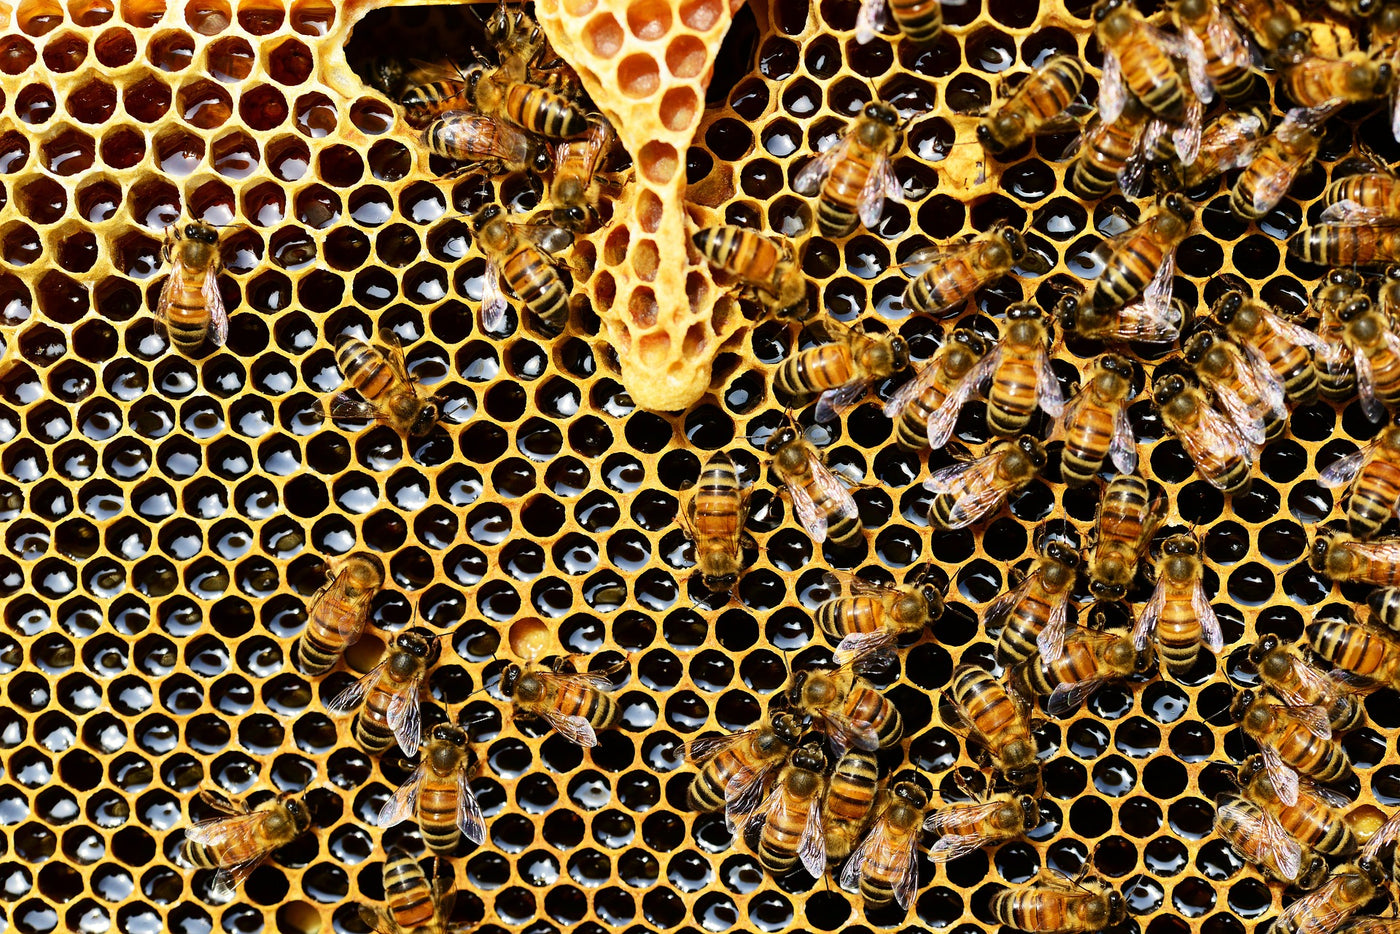 7 Hidden Health Benefits of Honey